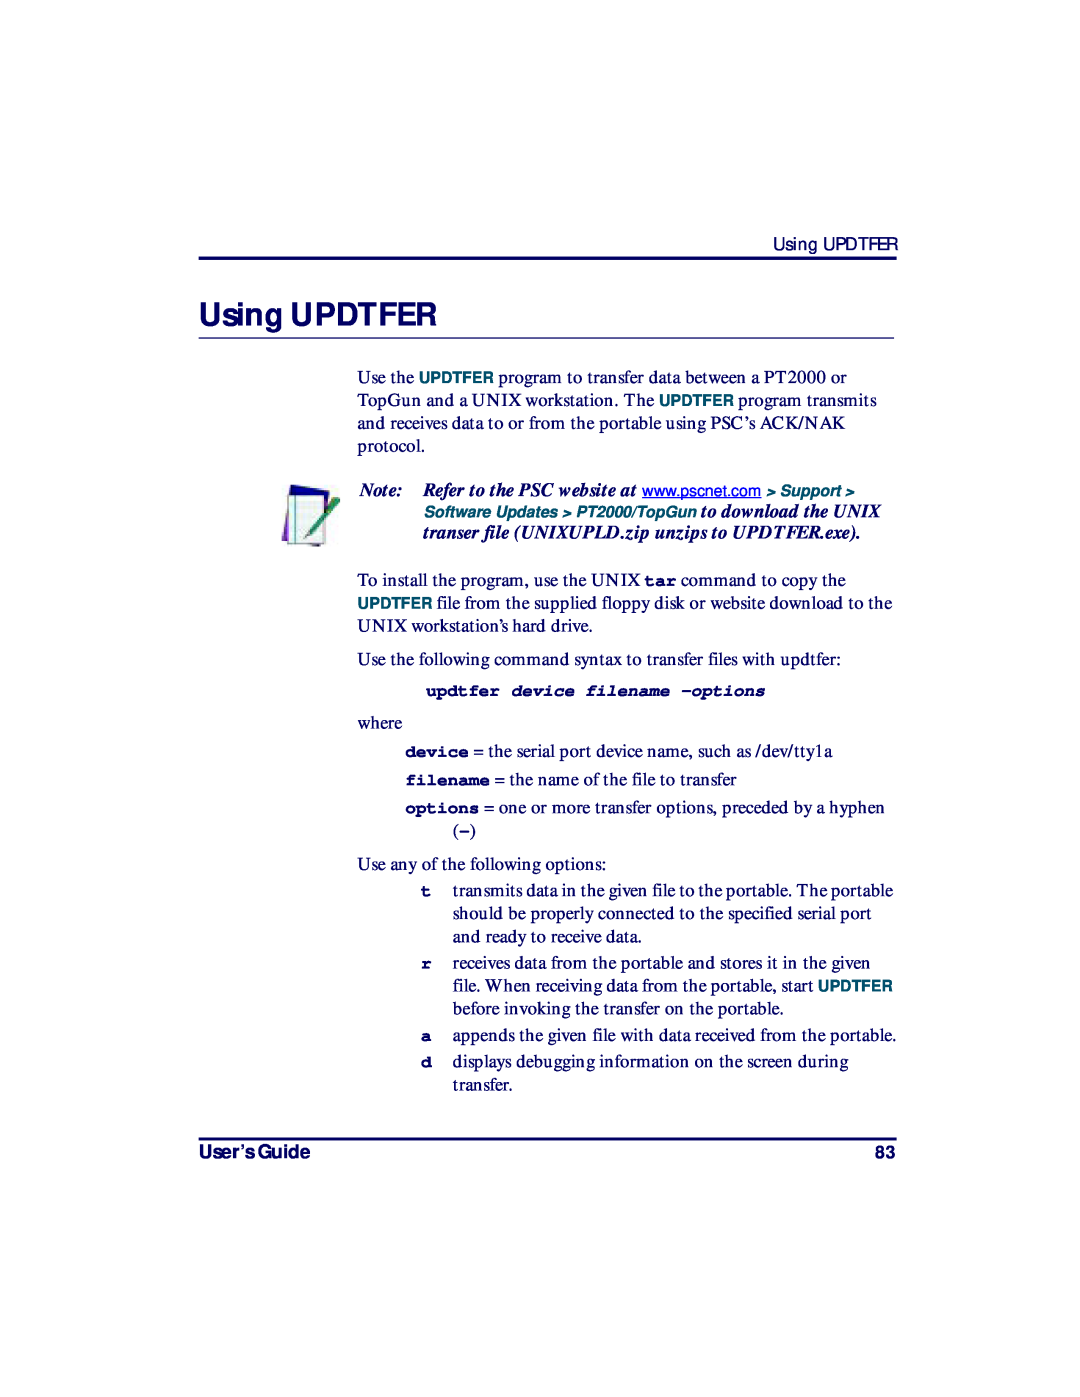 PSC PT2000, TopGun manual Using UPDTFER, User’s Guide 